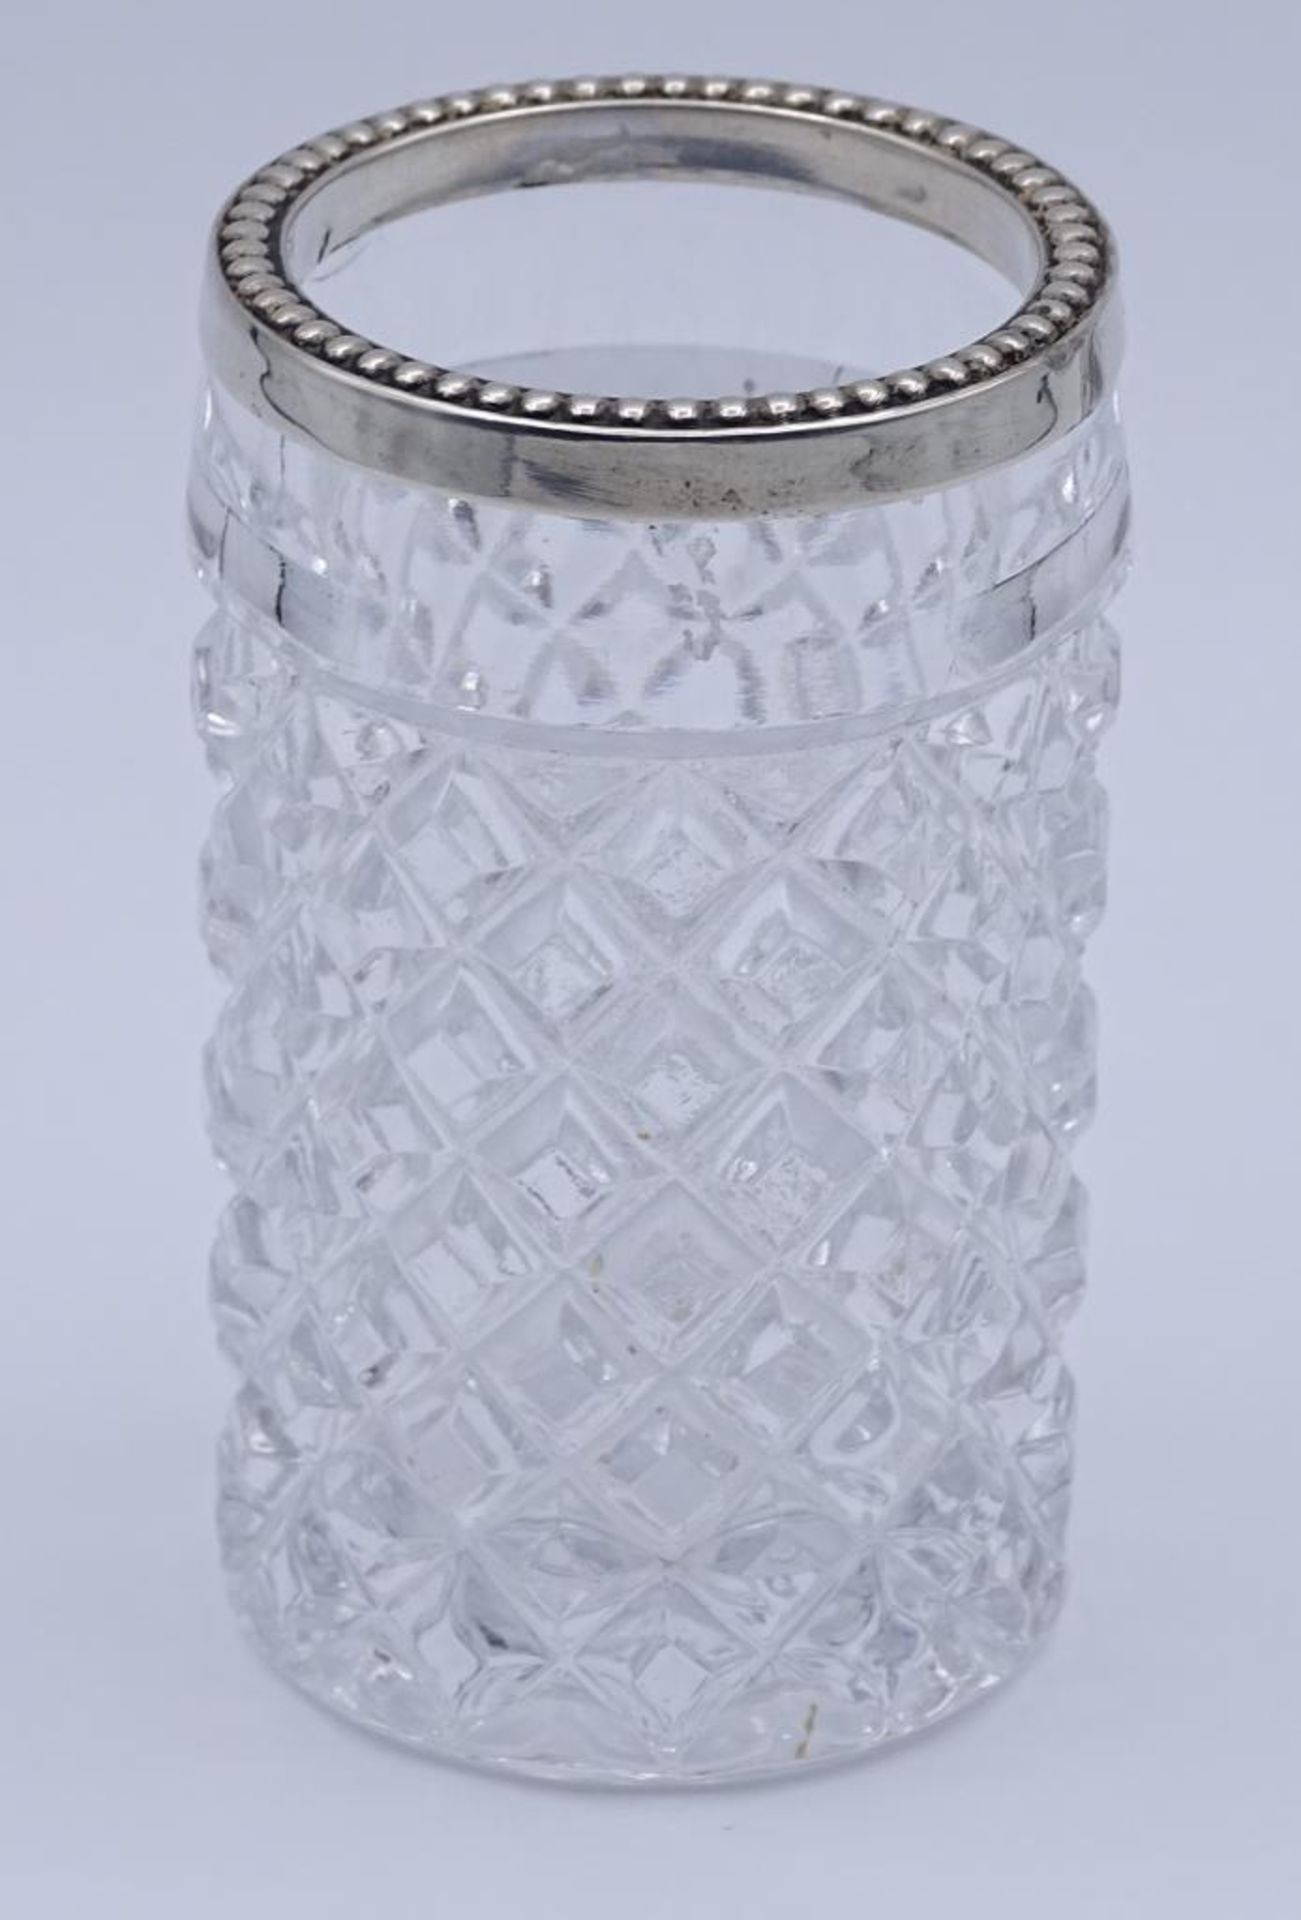 ALBO Glasgefäß mit Silberrand 835er Silber, 20. Jhd. Zahnstocher-Cocktailspieße-Streichholzhalter - Bild 2 aus 3